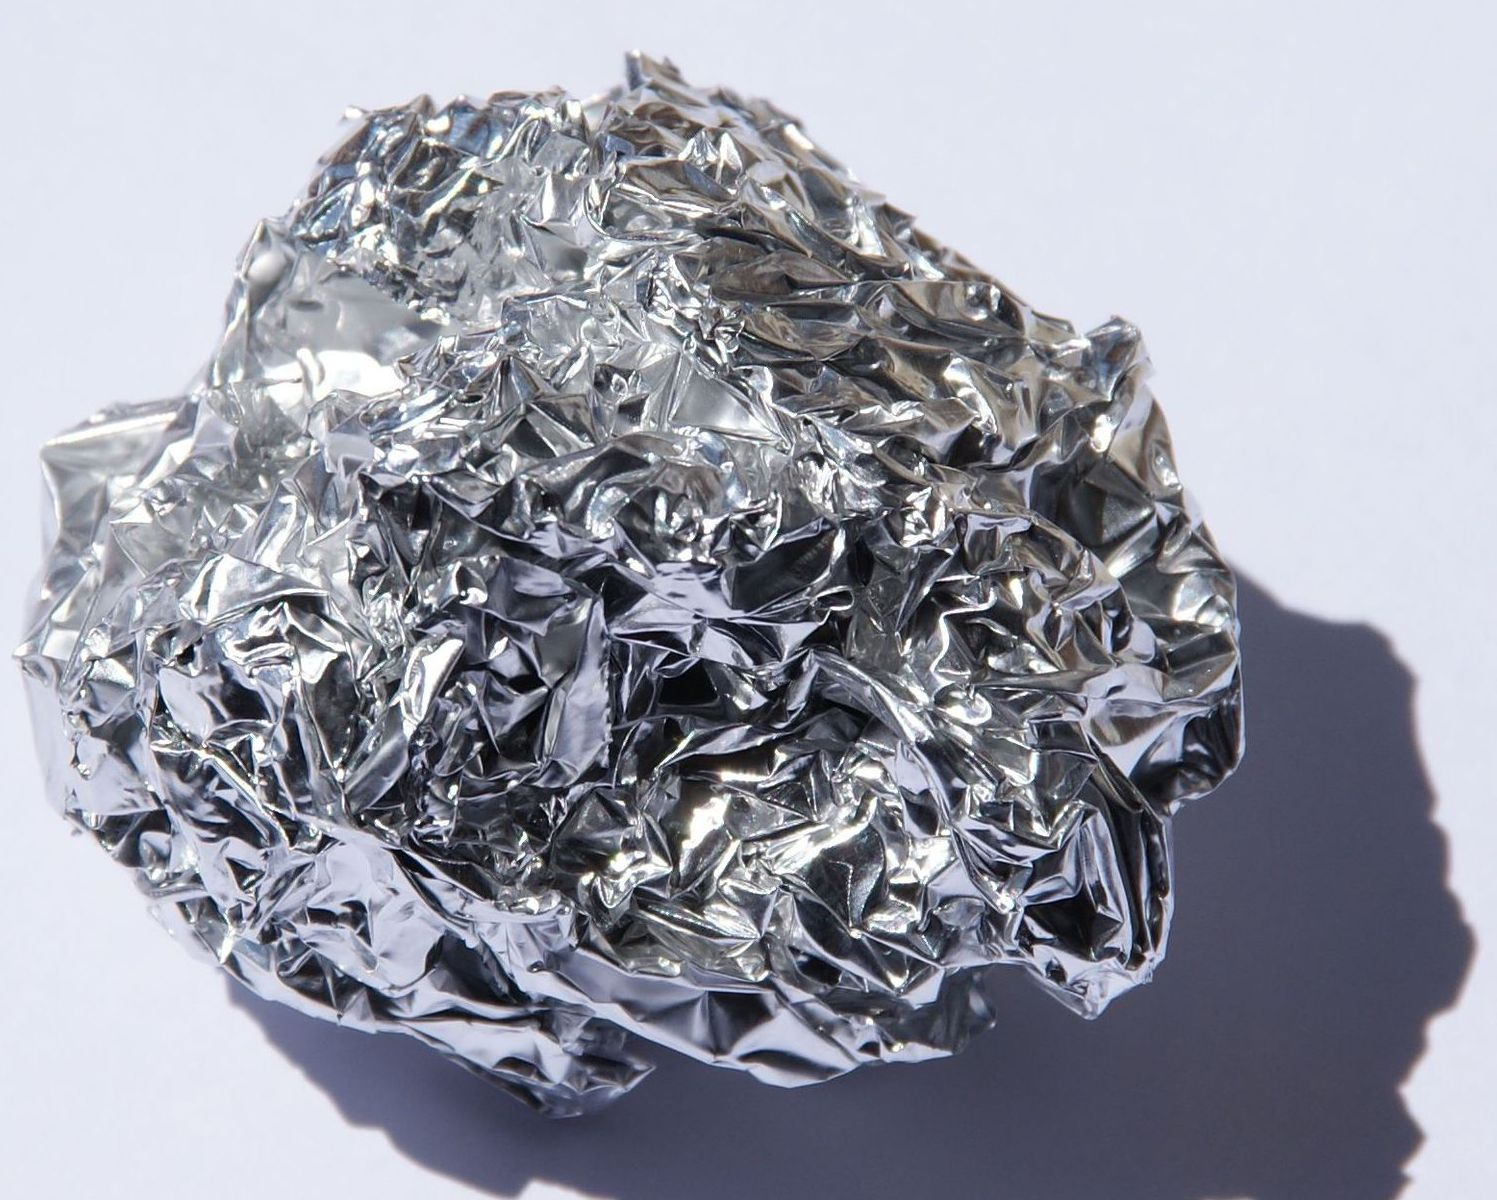 Железо рубленное. Дюраль алюминий сплав. Алюминий хим элемент. Сплавы алюминий-медь-кремний. Алюминий a5n.